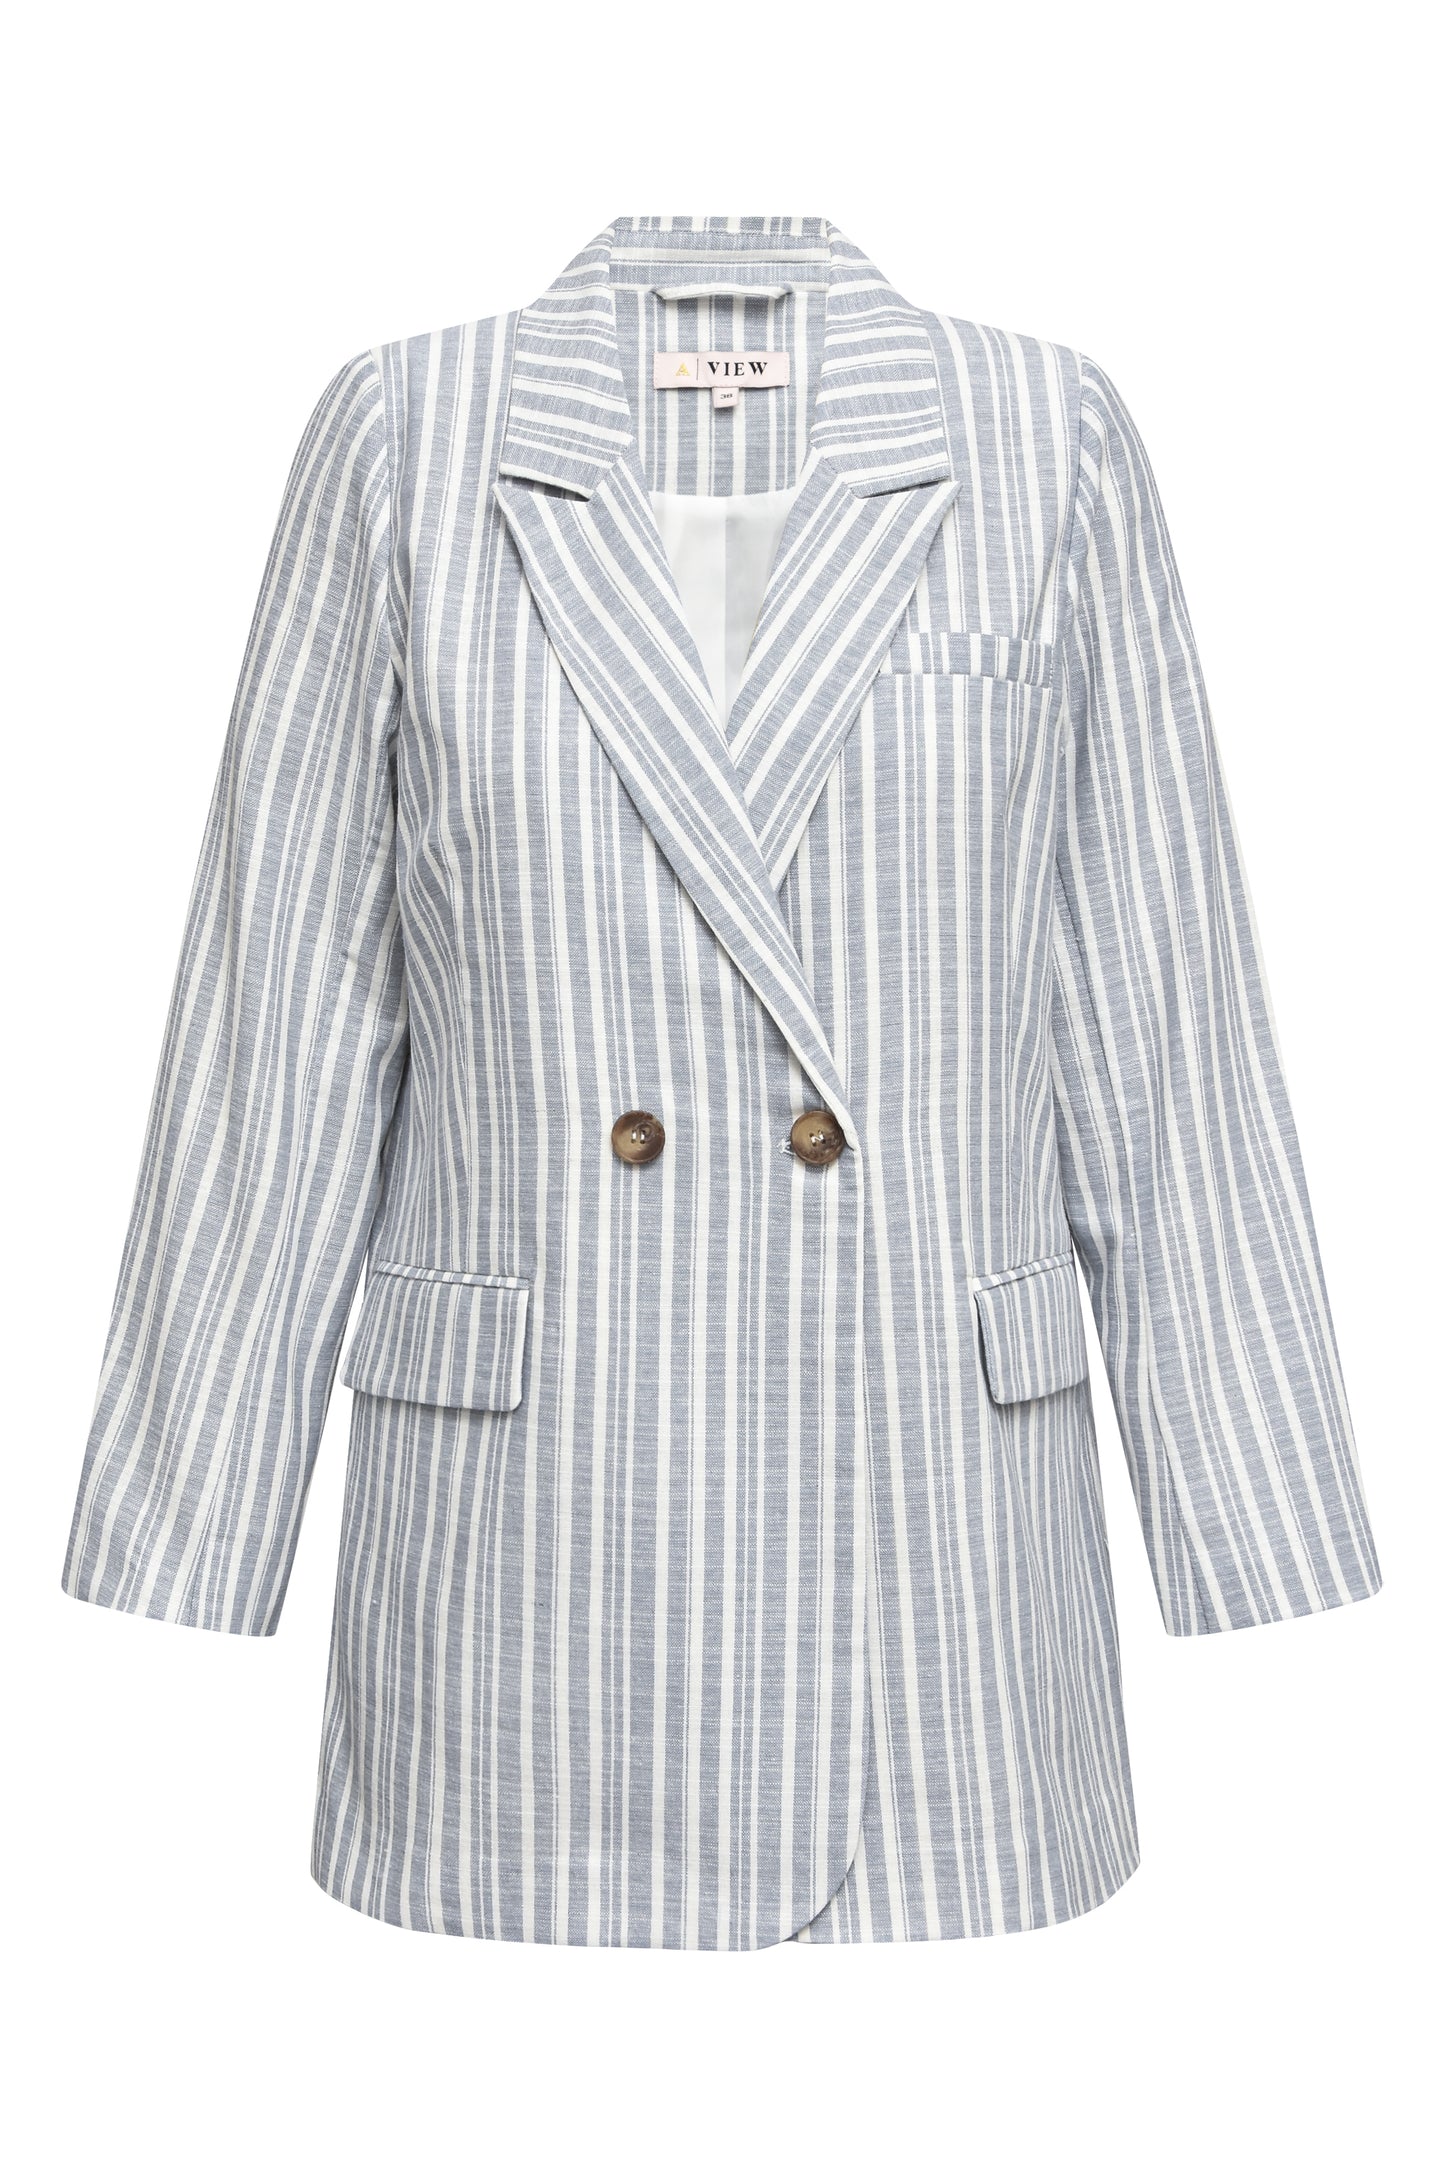 A-VIEW - Annali stripe linen blazer - Blå & hvid